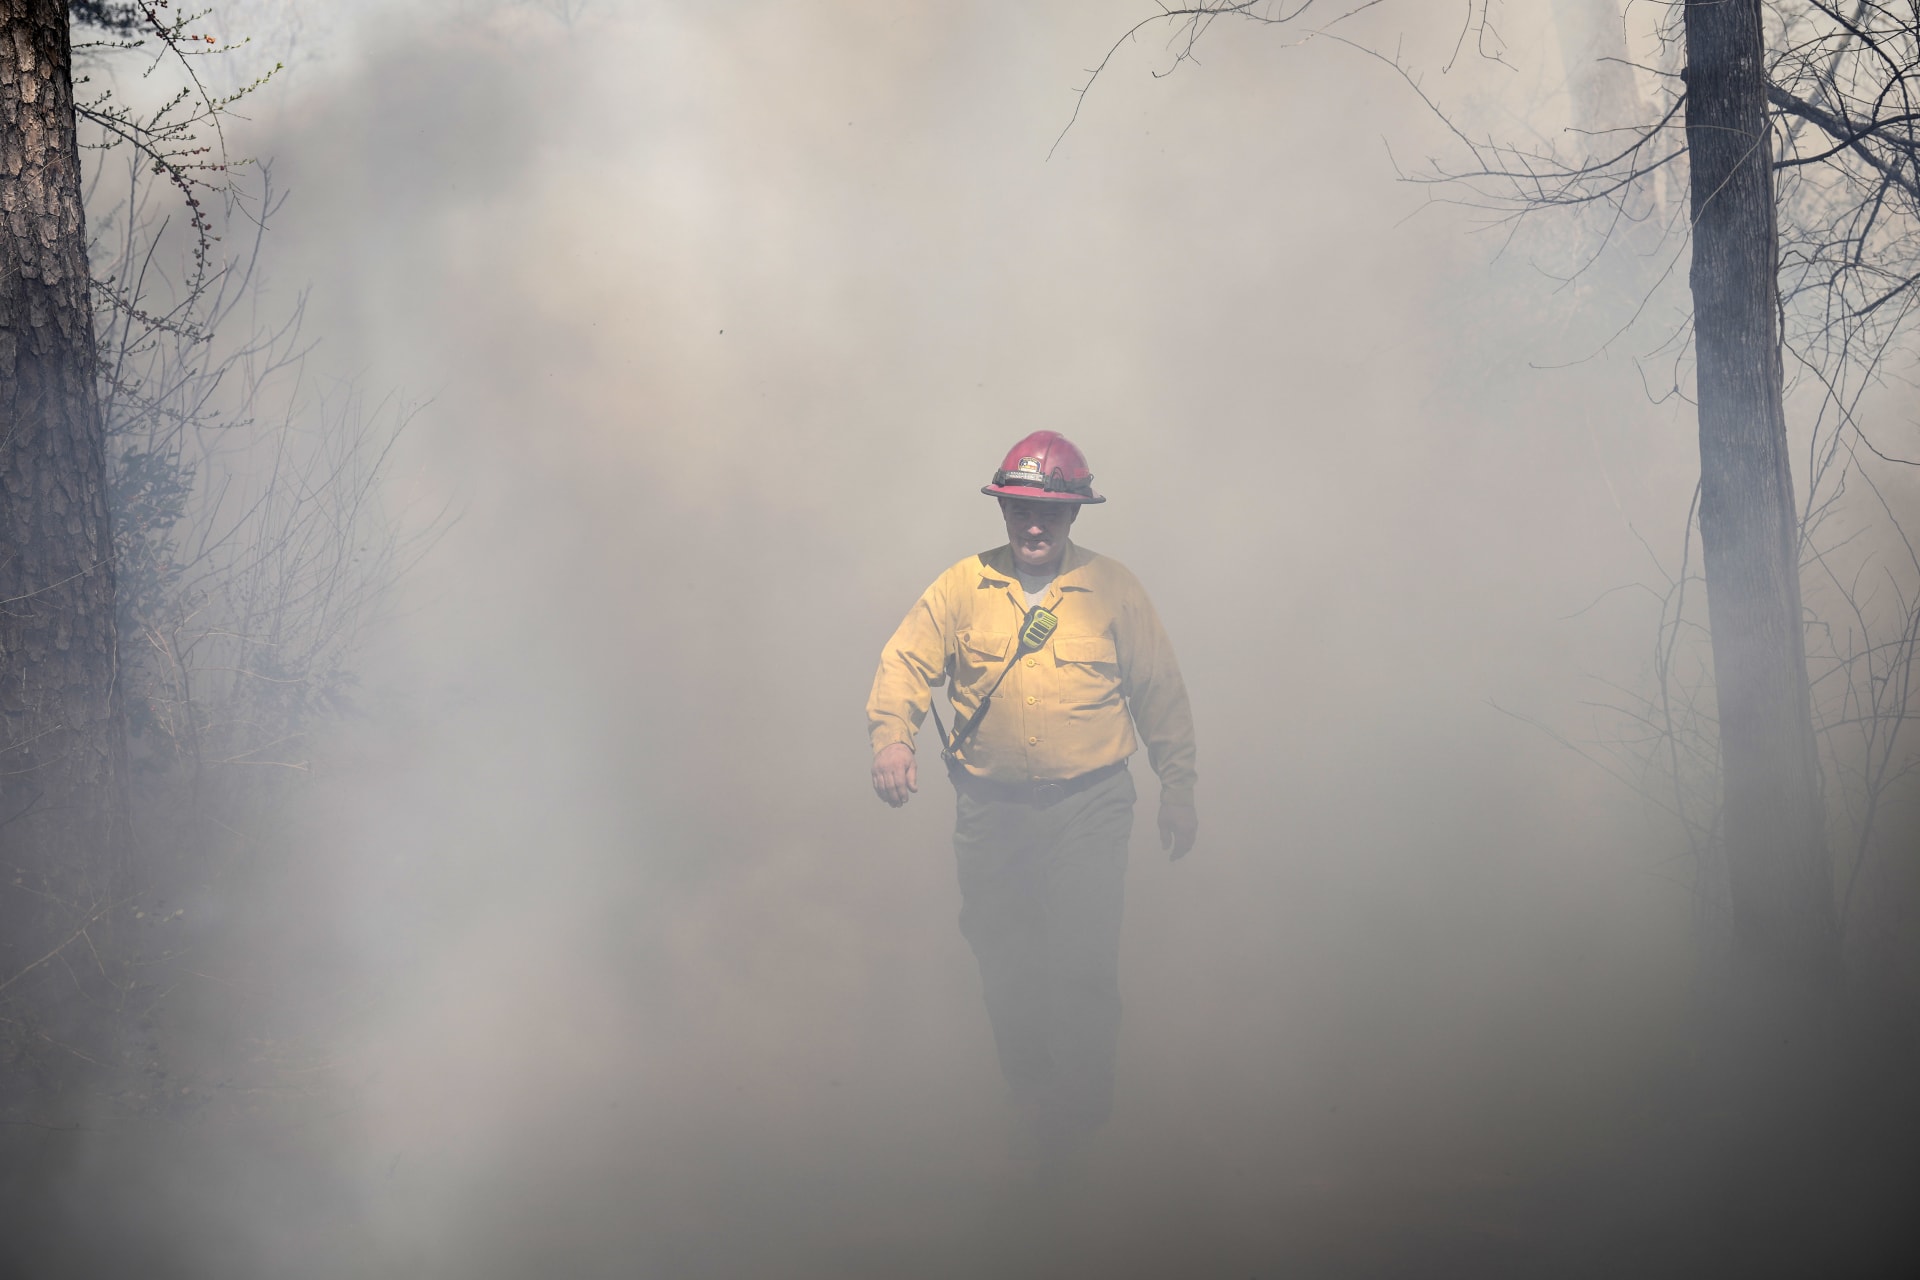 Texas sužují lesní požáry.